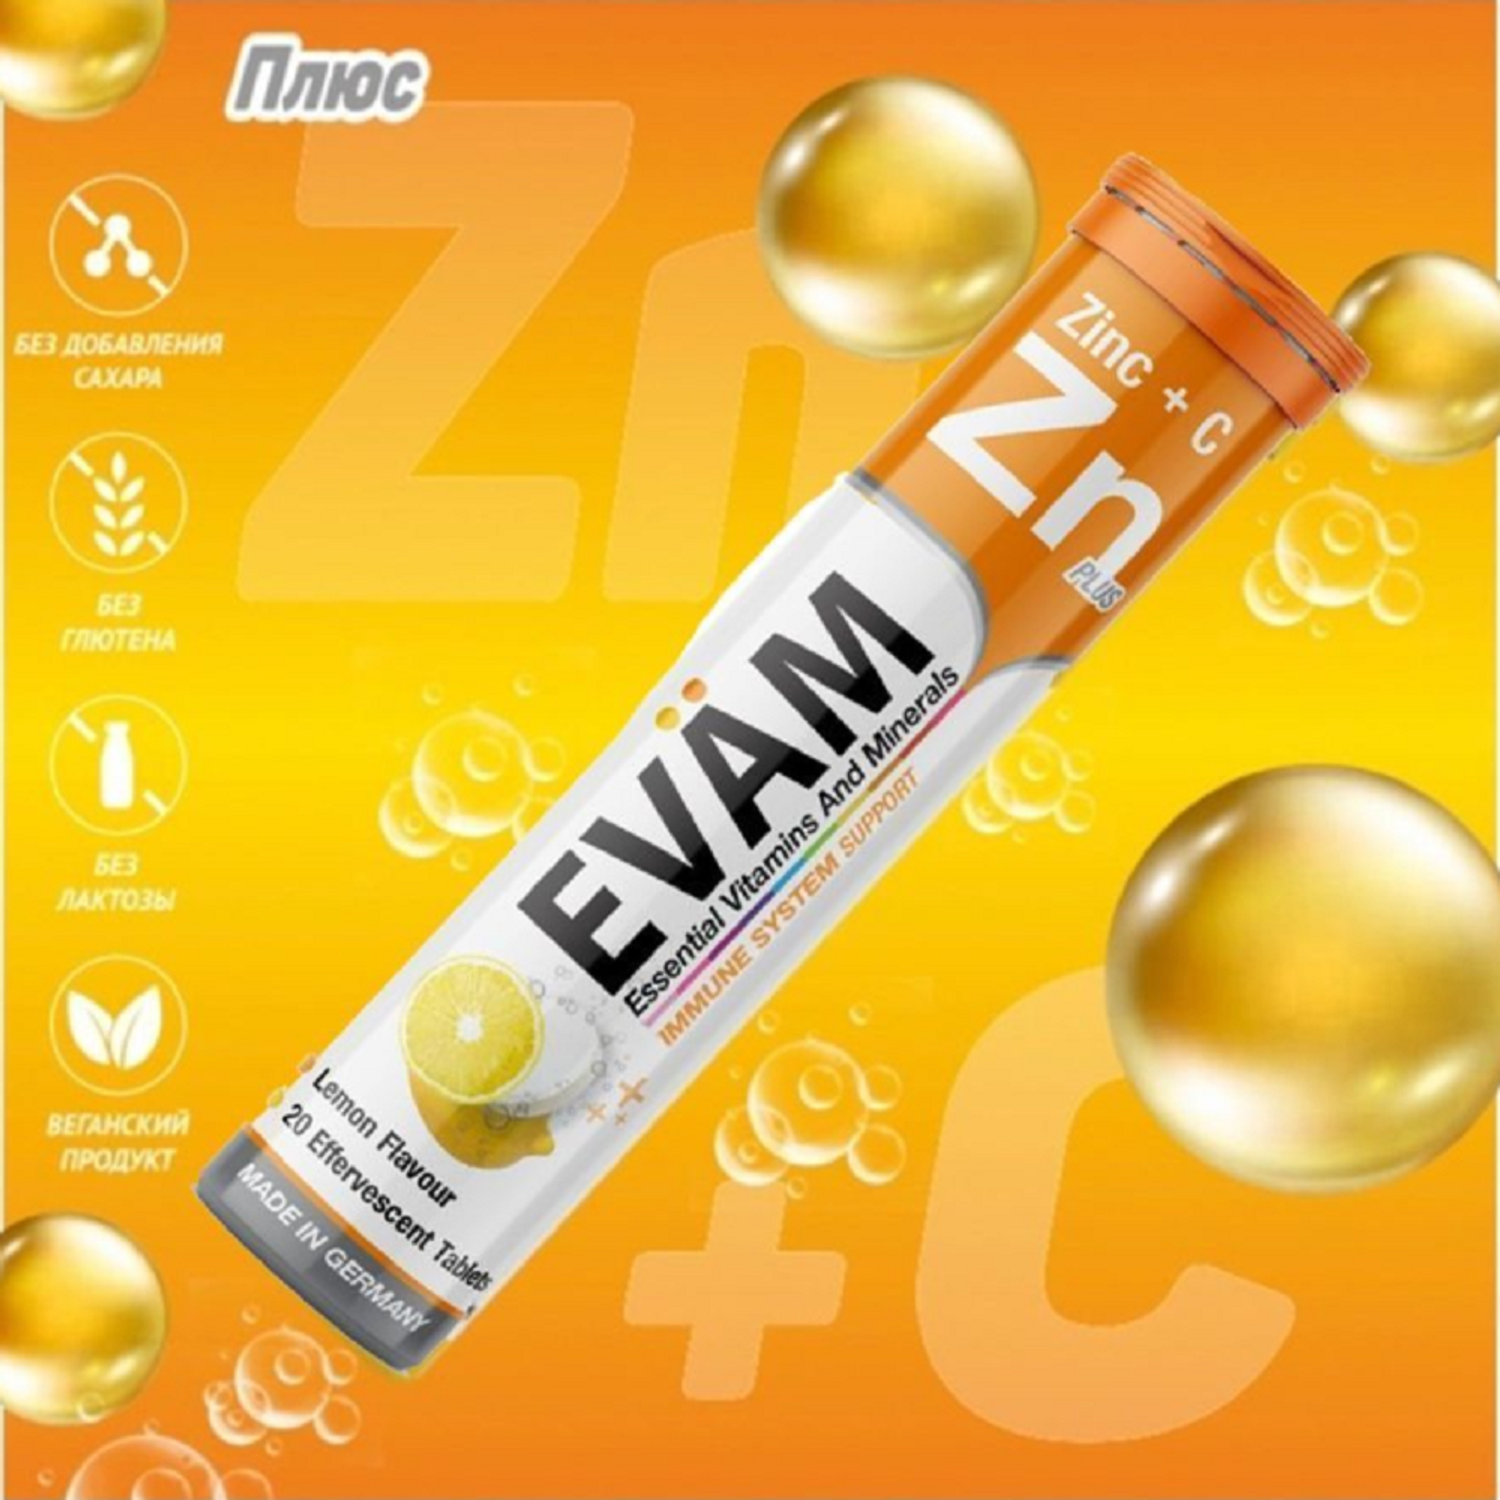 Шипучие витамины EVAM Zn С Цинк и Аскорбиновая кислота 20 таблеток - фото 4